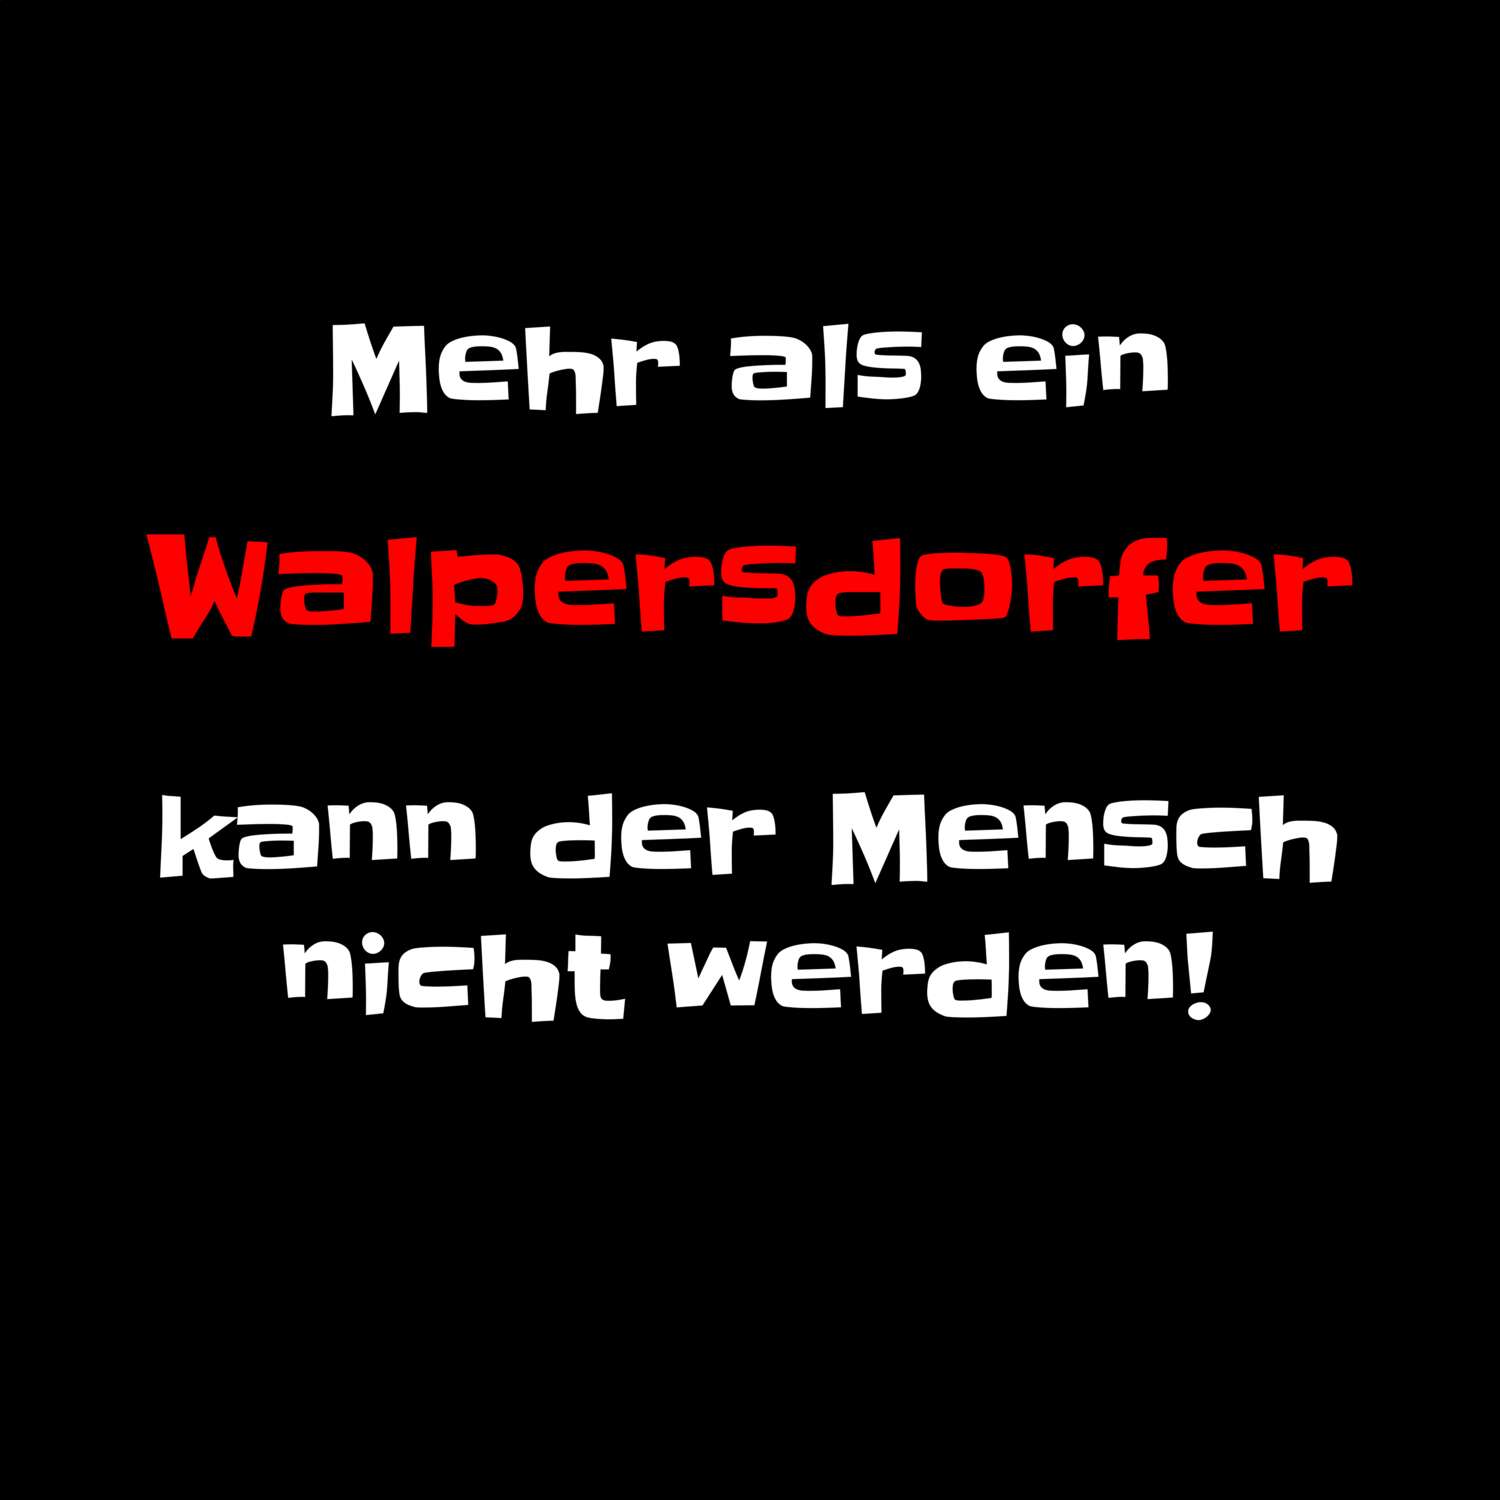 Walpersdorf T-Shirt »Mehr als ein«